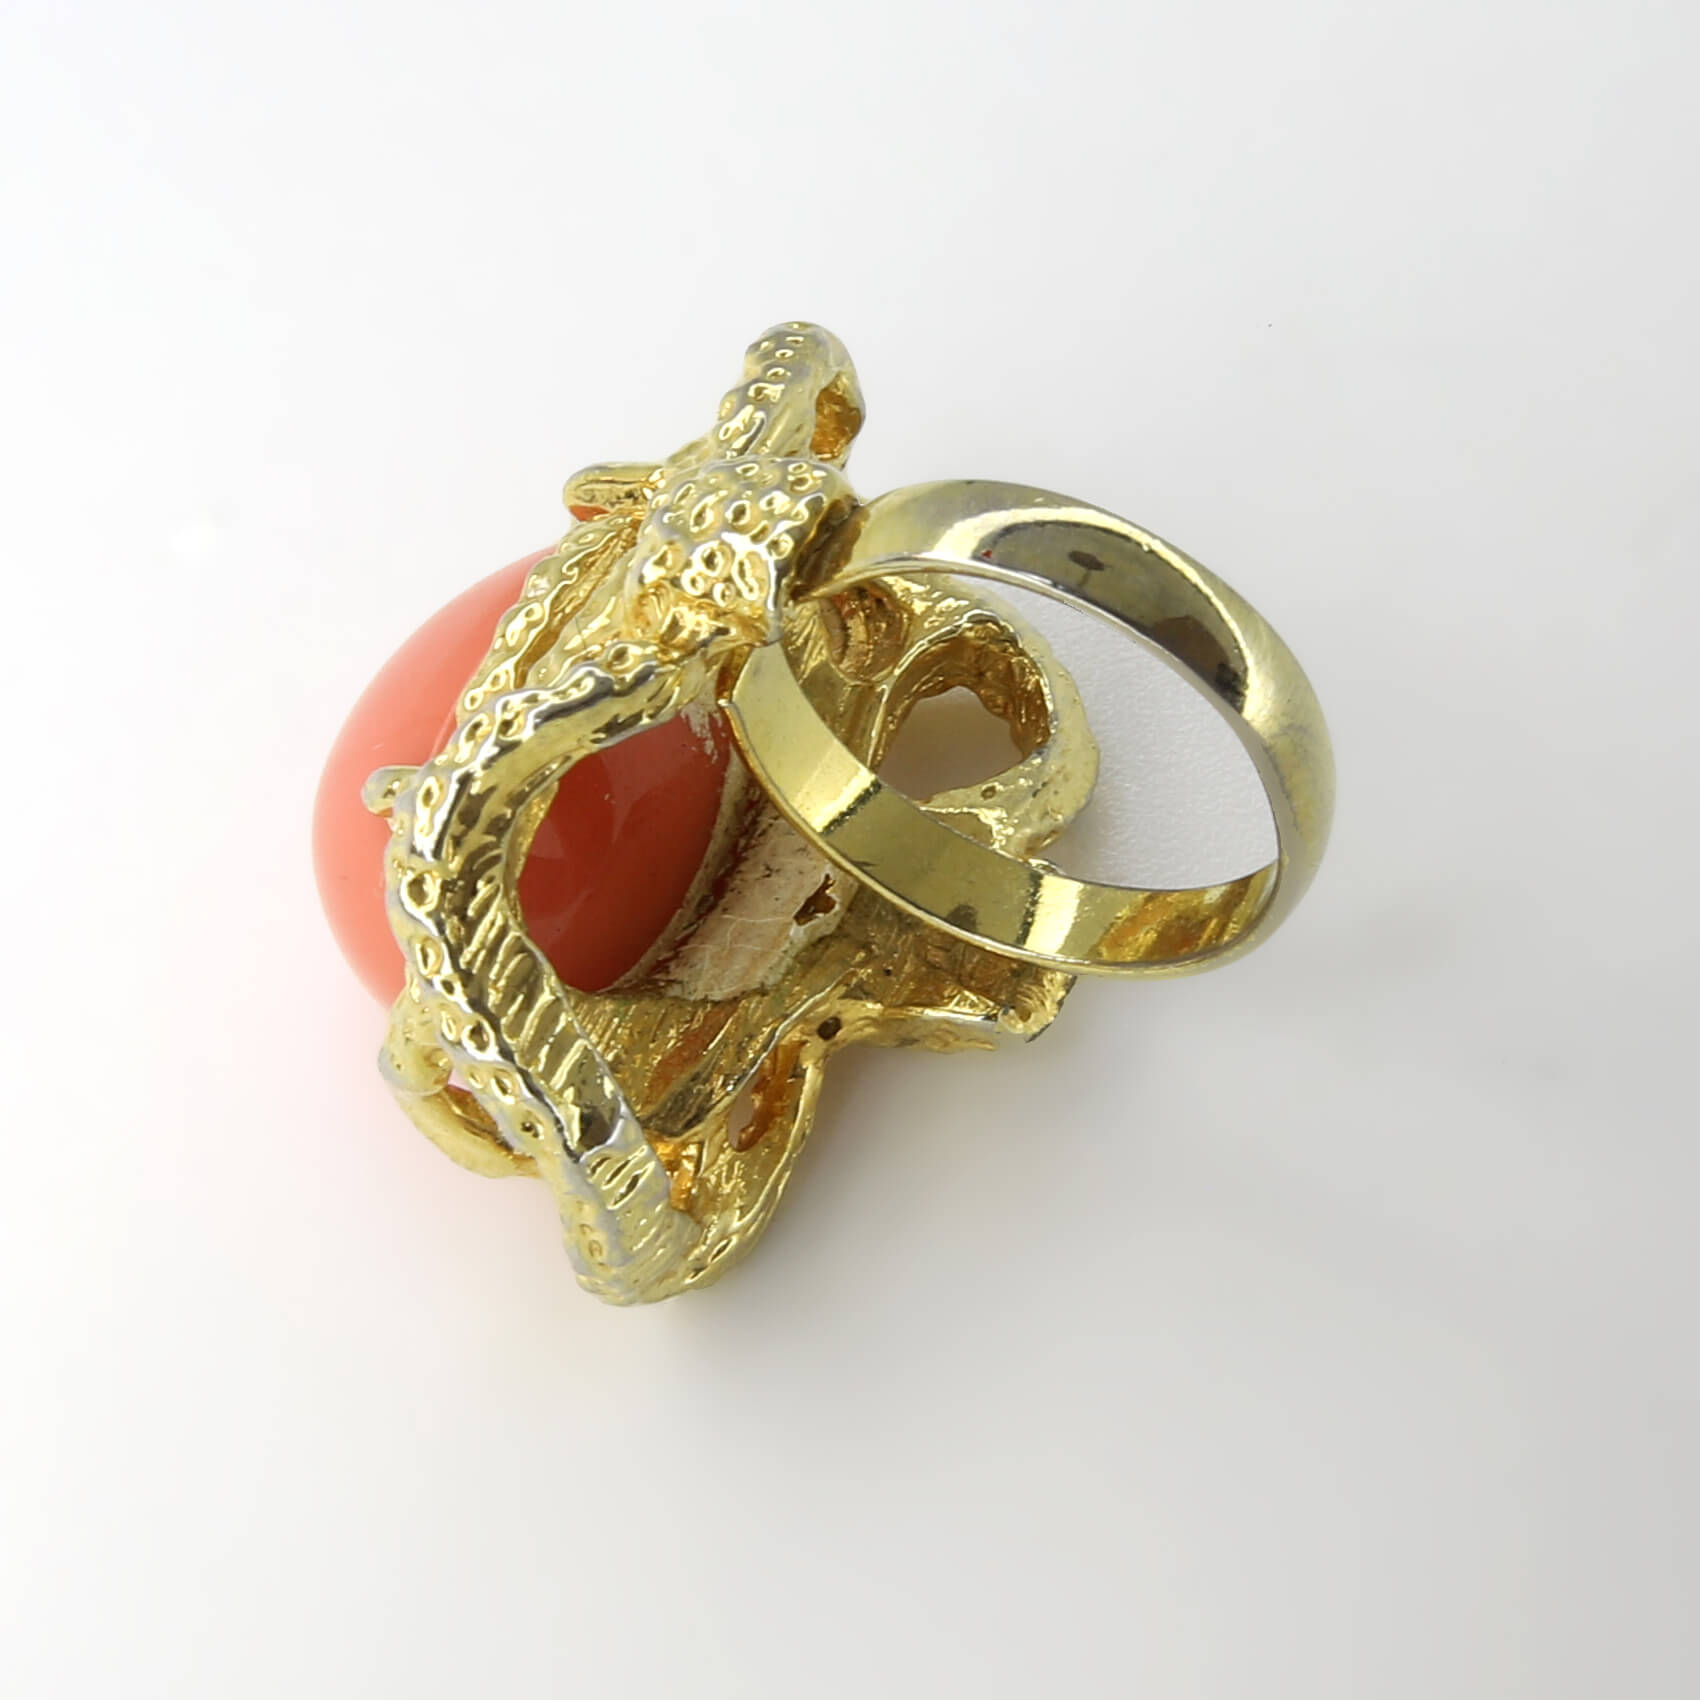 Винтажное кольцо Vogue размер 15,5-17,5, цвет Оранжевый, фото 2